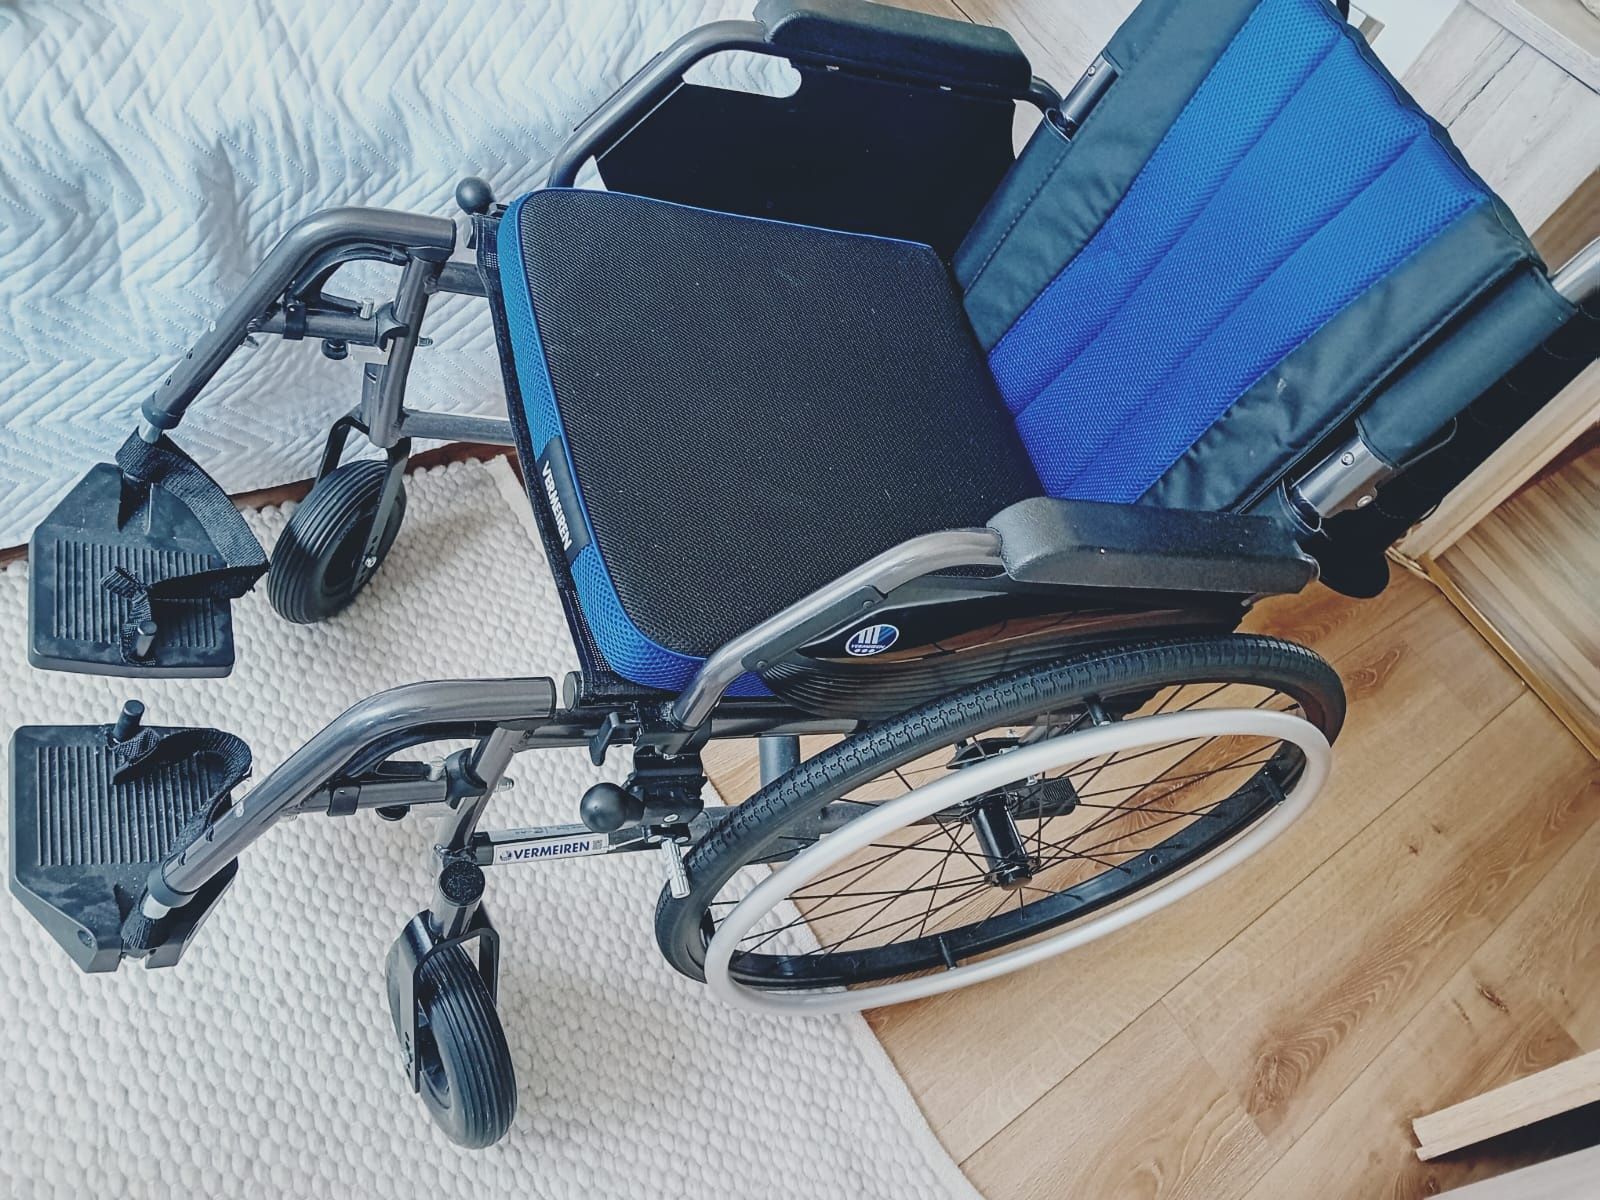 Wózek inwalidzki vermeiren nowy